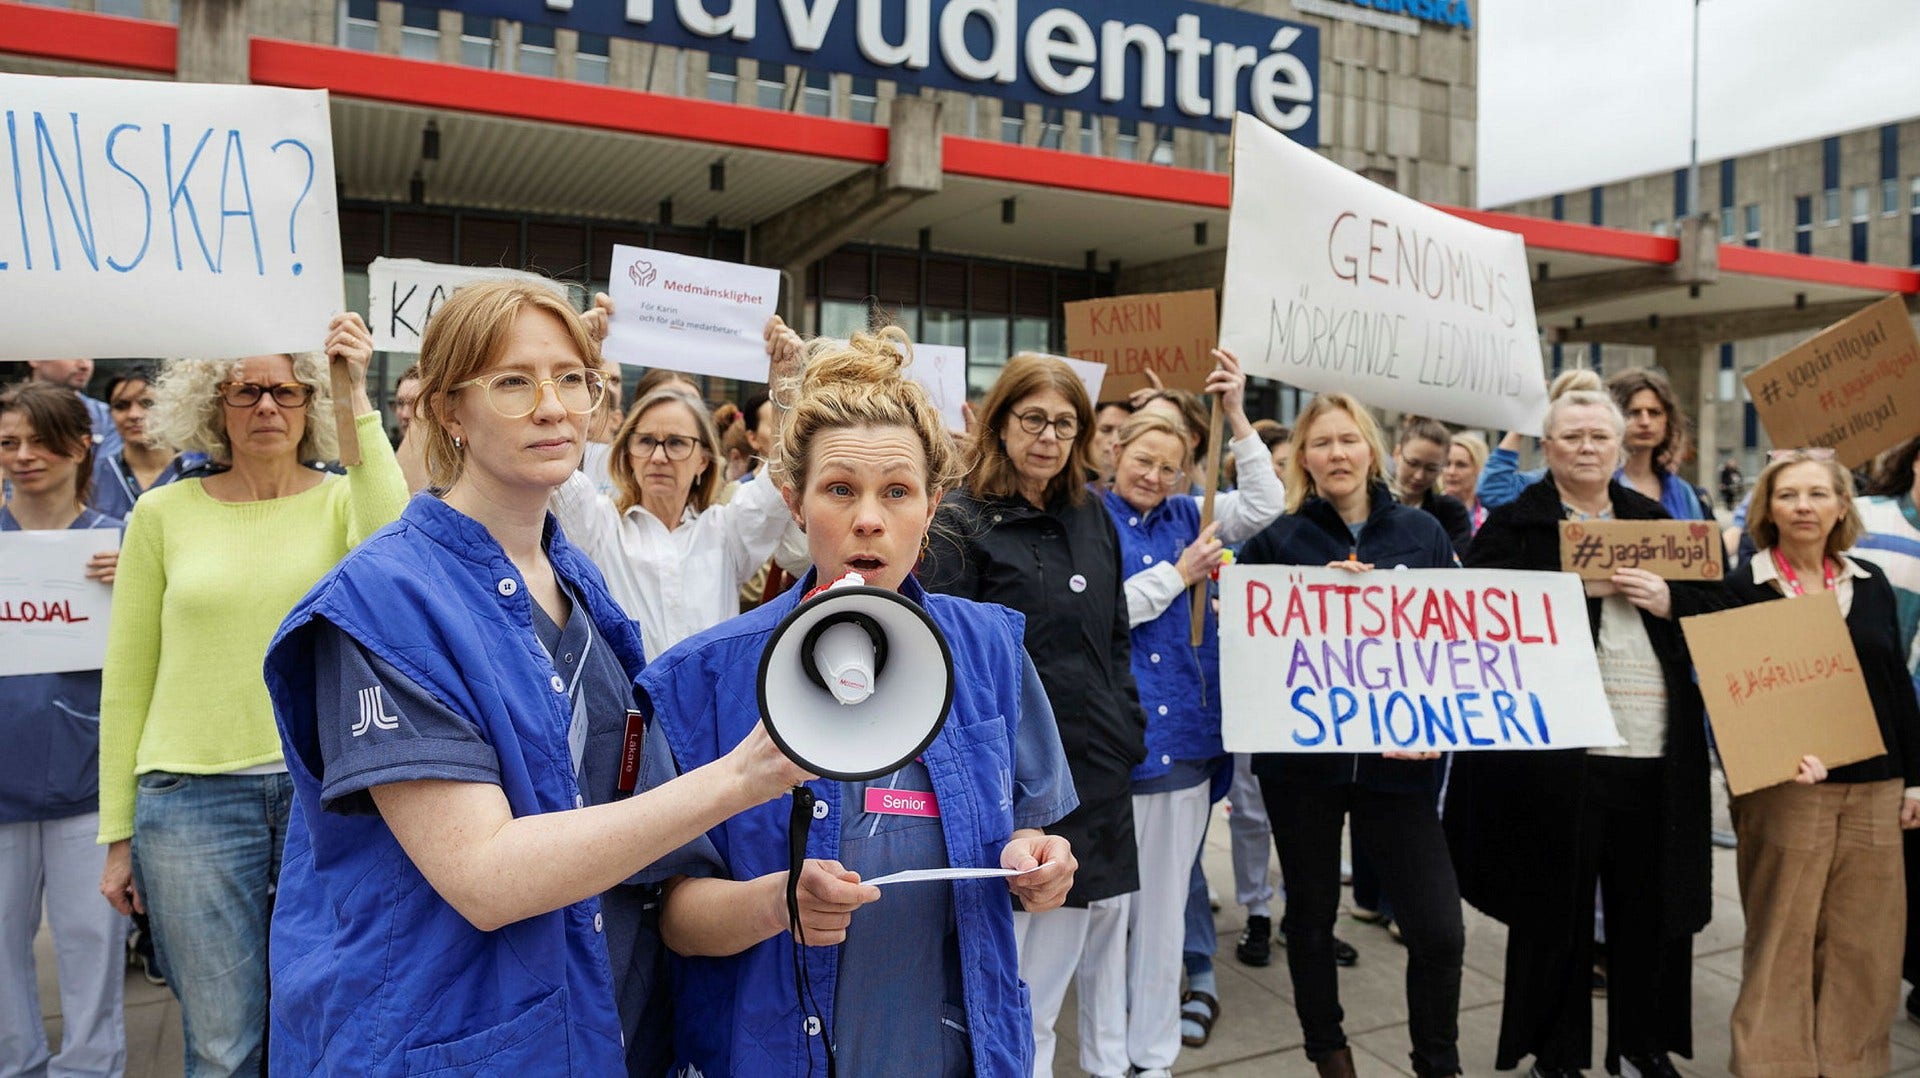 Karin Petterssons medarbetare protesterar utanför Karolinska Huddinges huvudentré.